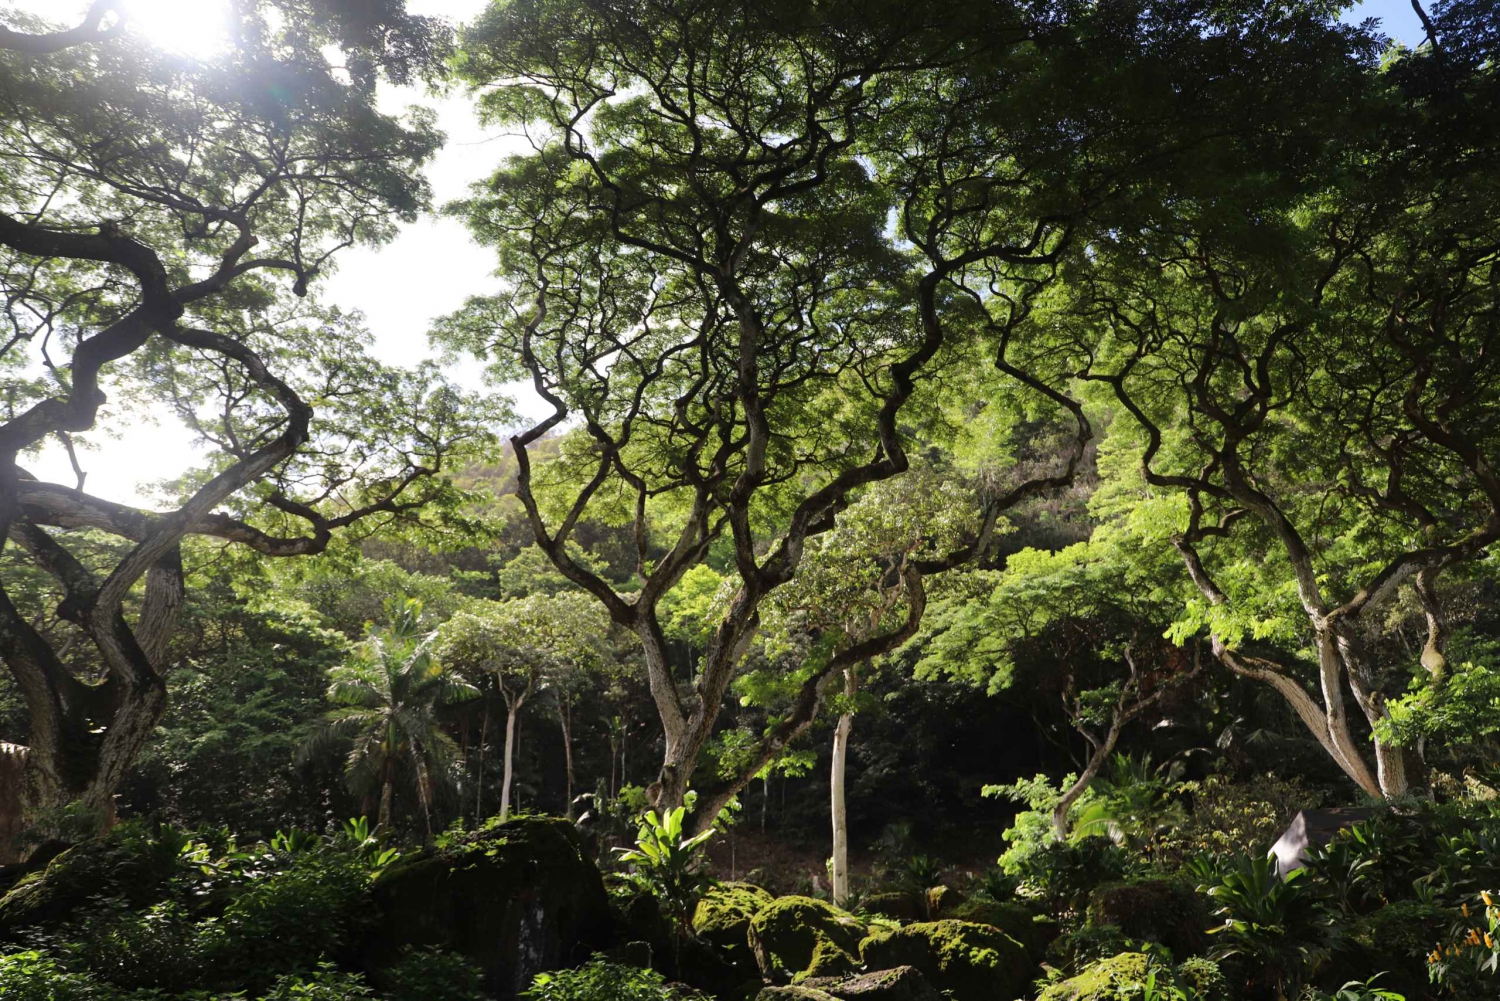 Oahu: Valley of Waimea Falls Swim & Hike with Lunch & Dole